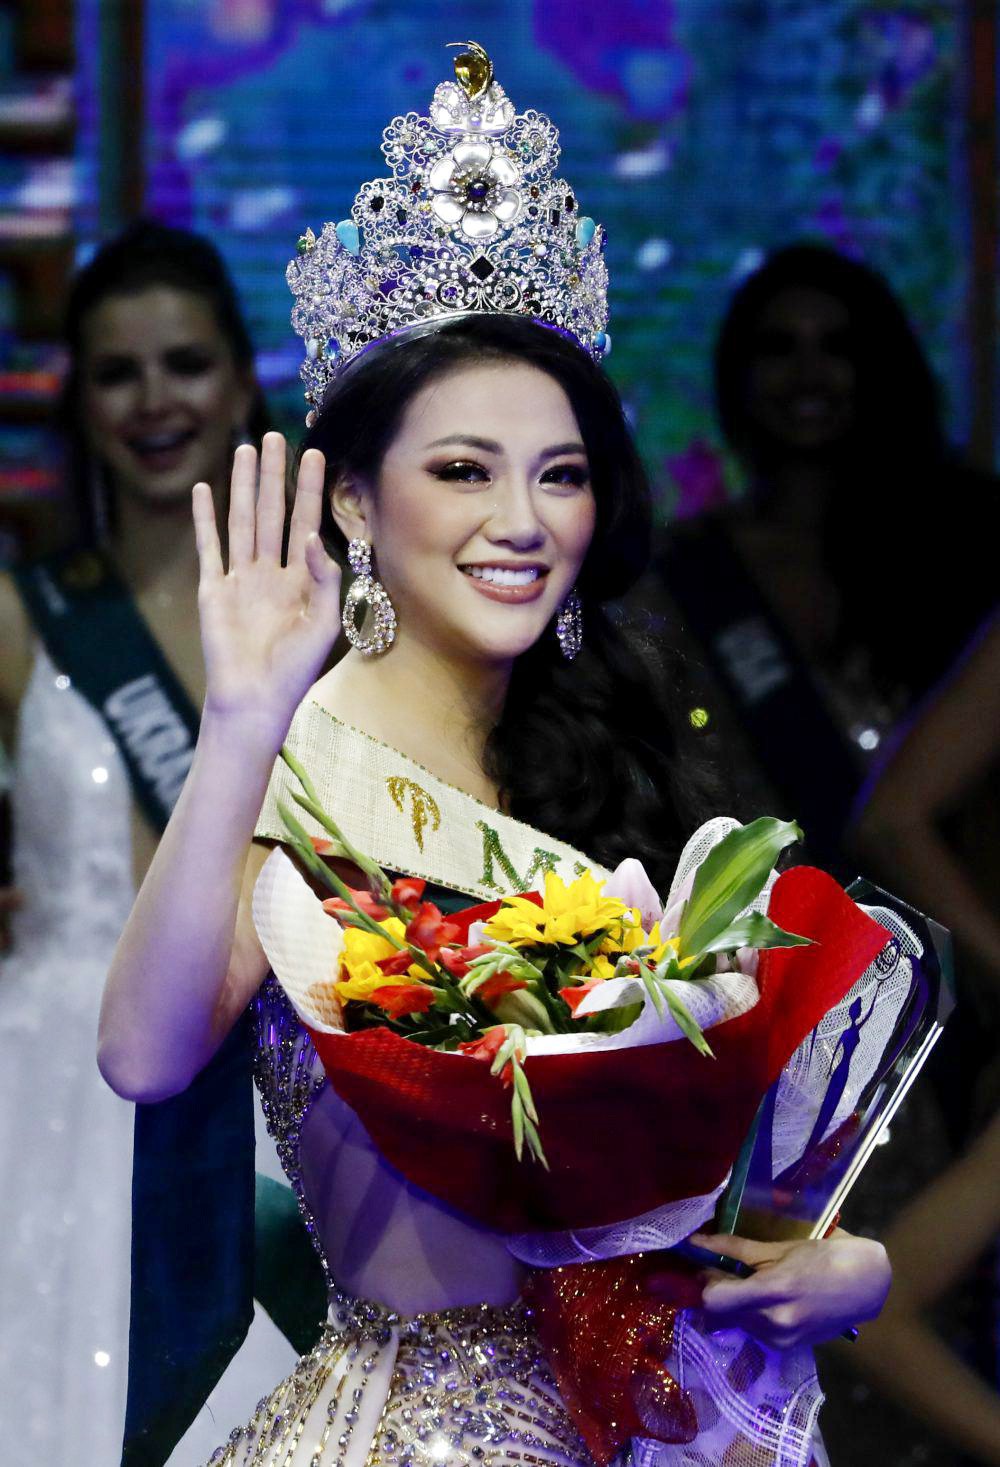 Vị trí thứ 5 trong Top 10 thuộc về Việt Nam là một bước tiến vượt bậc của nhan sắc Việt. 2 gương mặt mang lại thành công lớn là Nguyễn Phương Khánh với vương miện Hoa hậu Trái đất - Miss Earth 2018